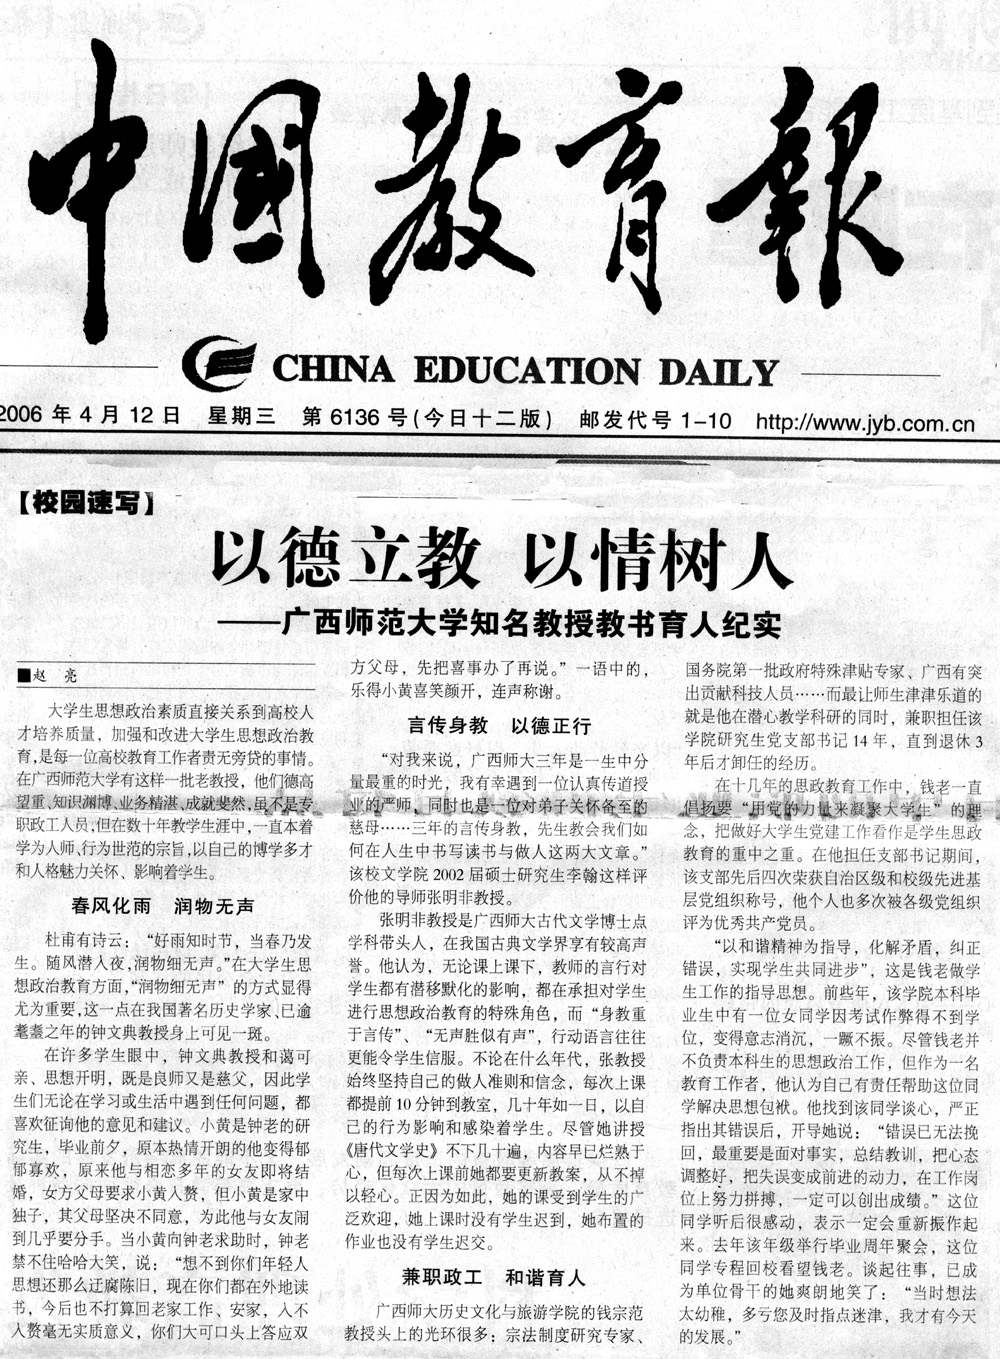 2006年4月12日，《中国教育报》在“校园速写”栏目报道了我校知名教授教书育人的纪实事迹。